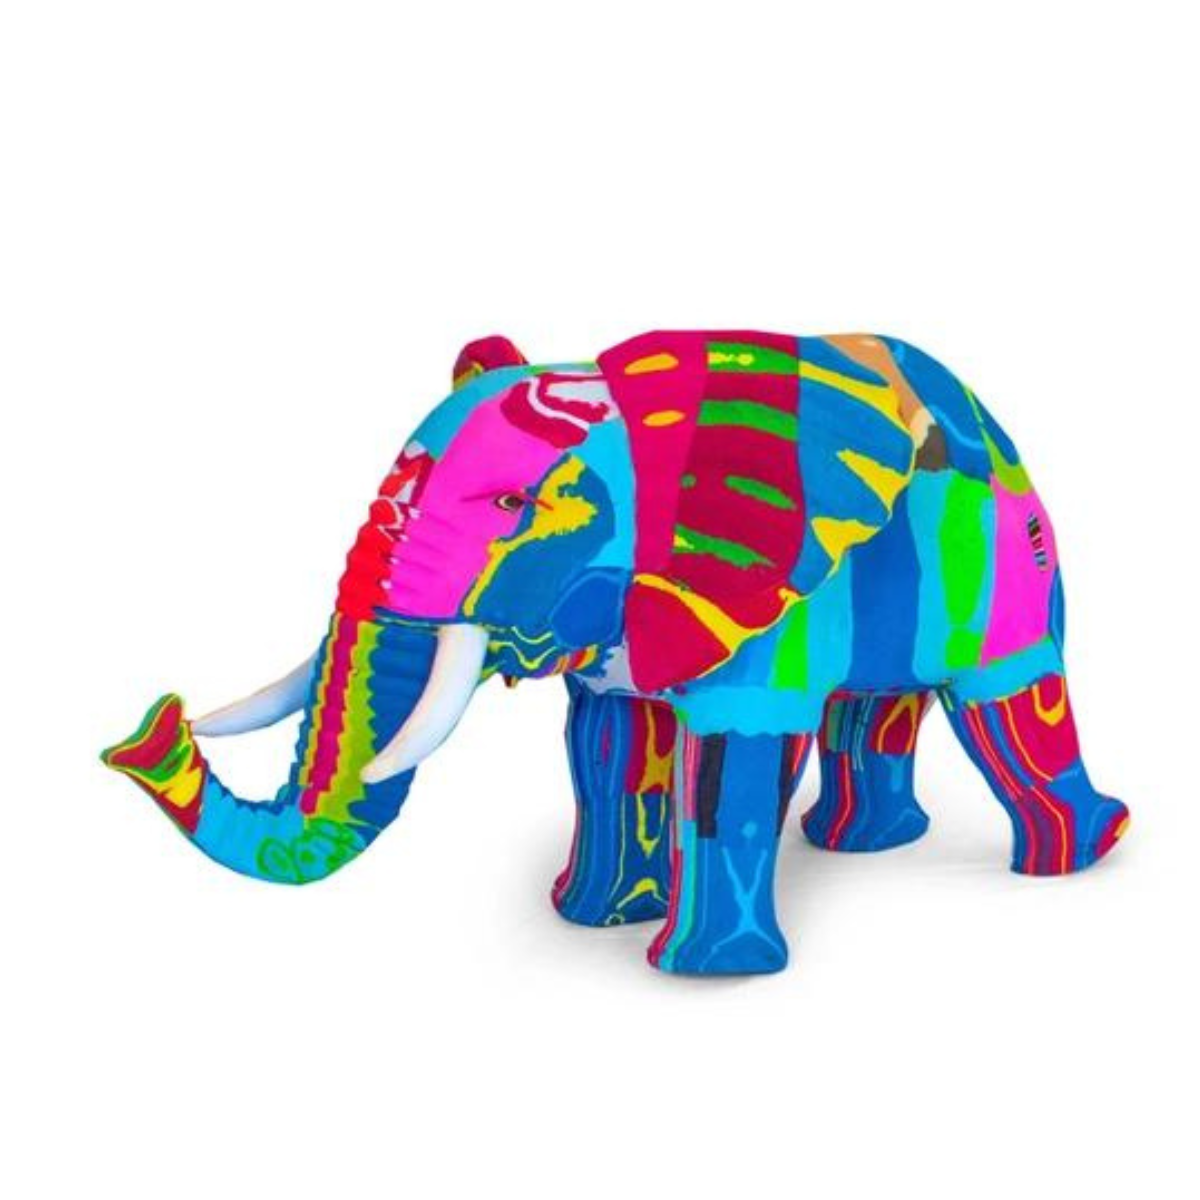 Elephant Flip Flop Sculpture